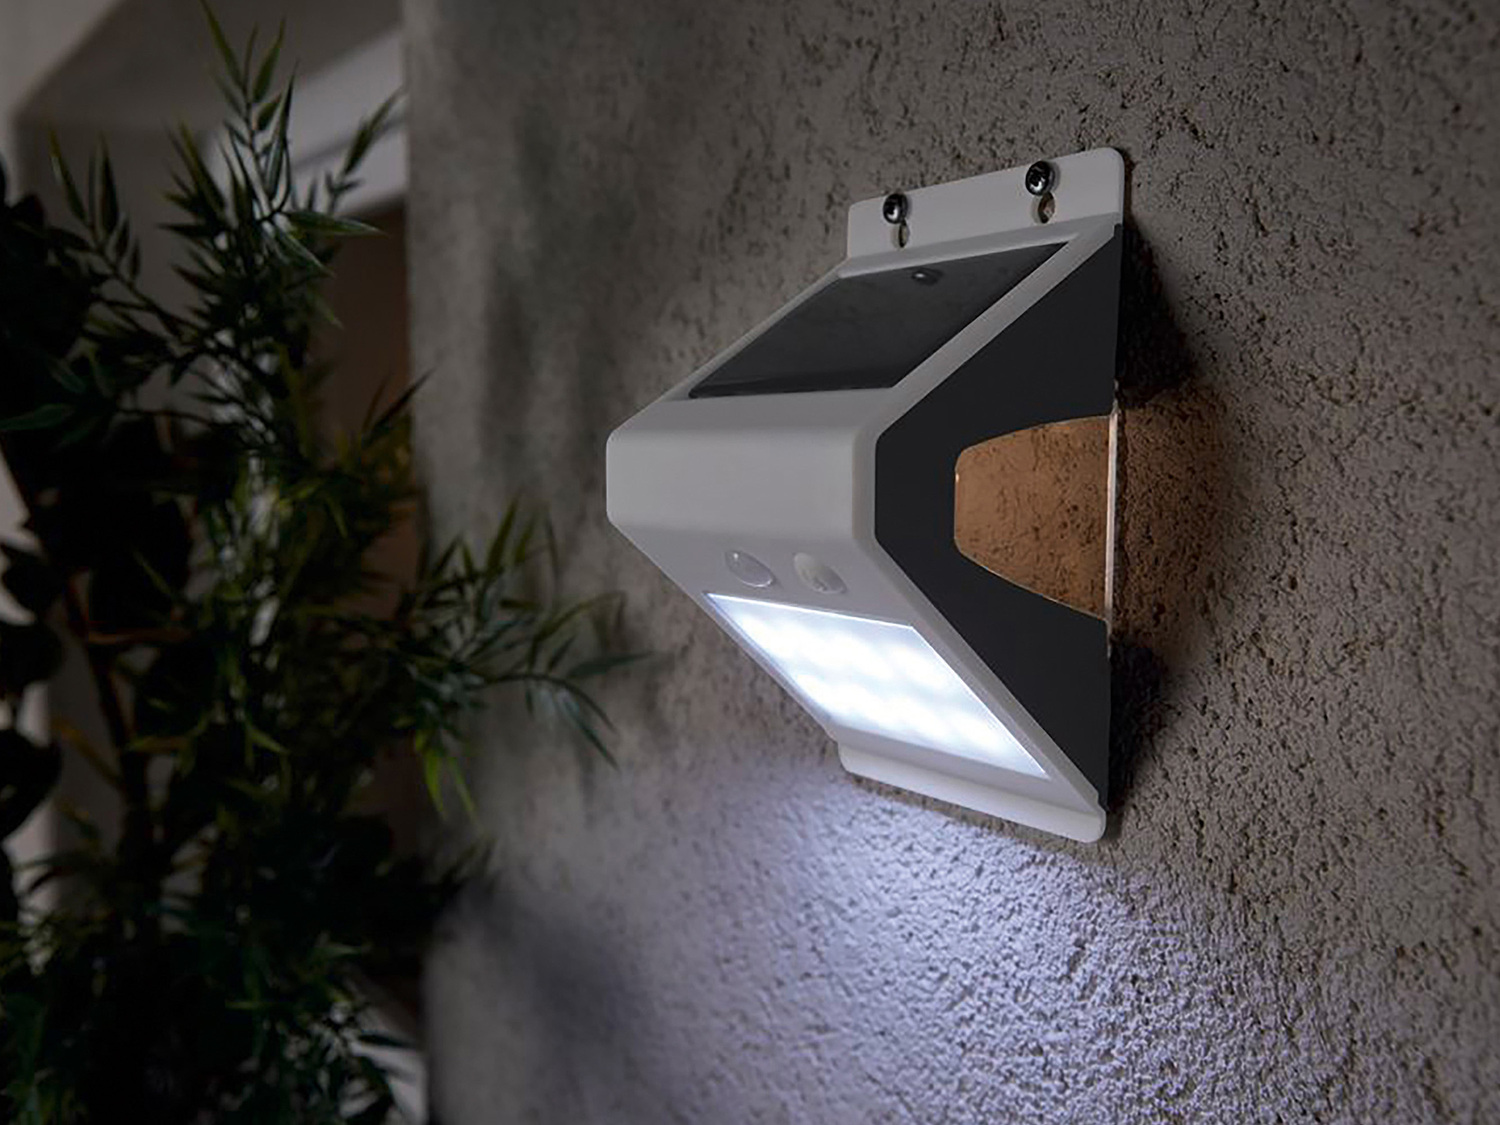 Lampada LED ad energia solare con rilevatore di movimento Livarno Lux, prezzo 9.99 ...